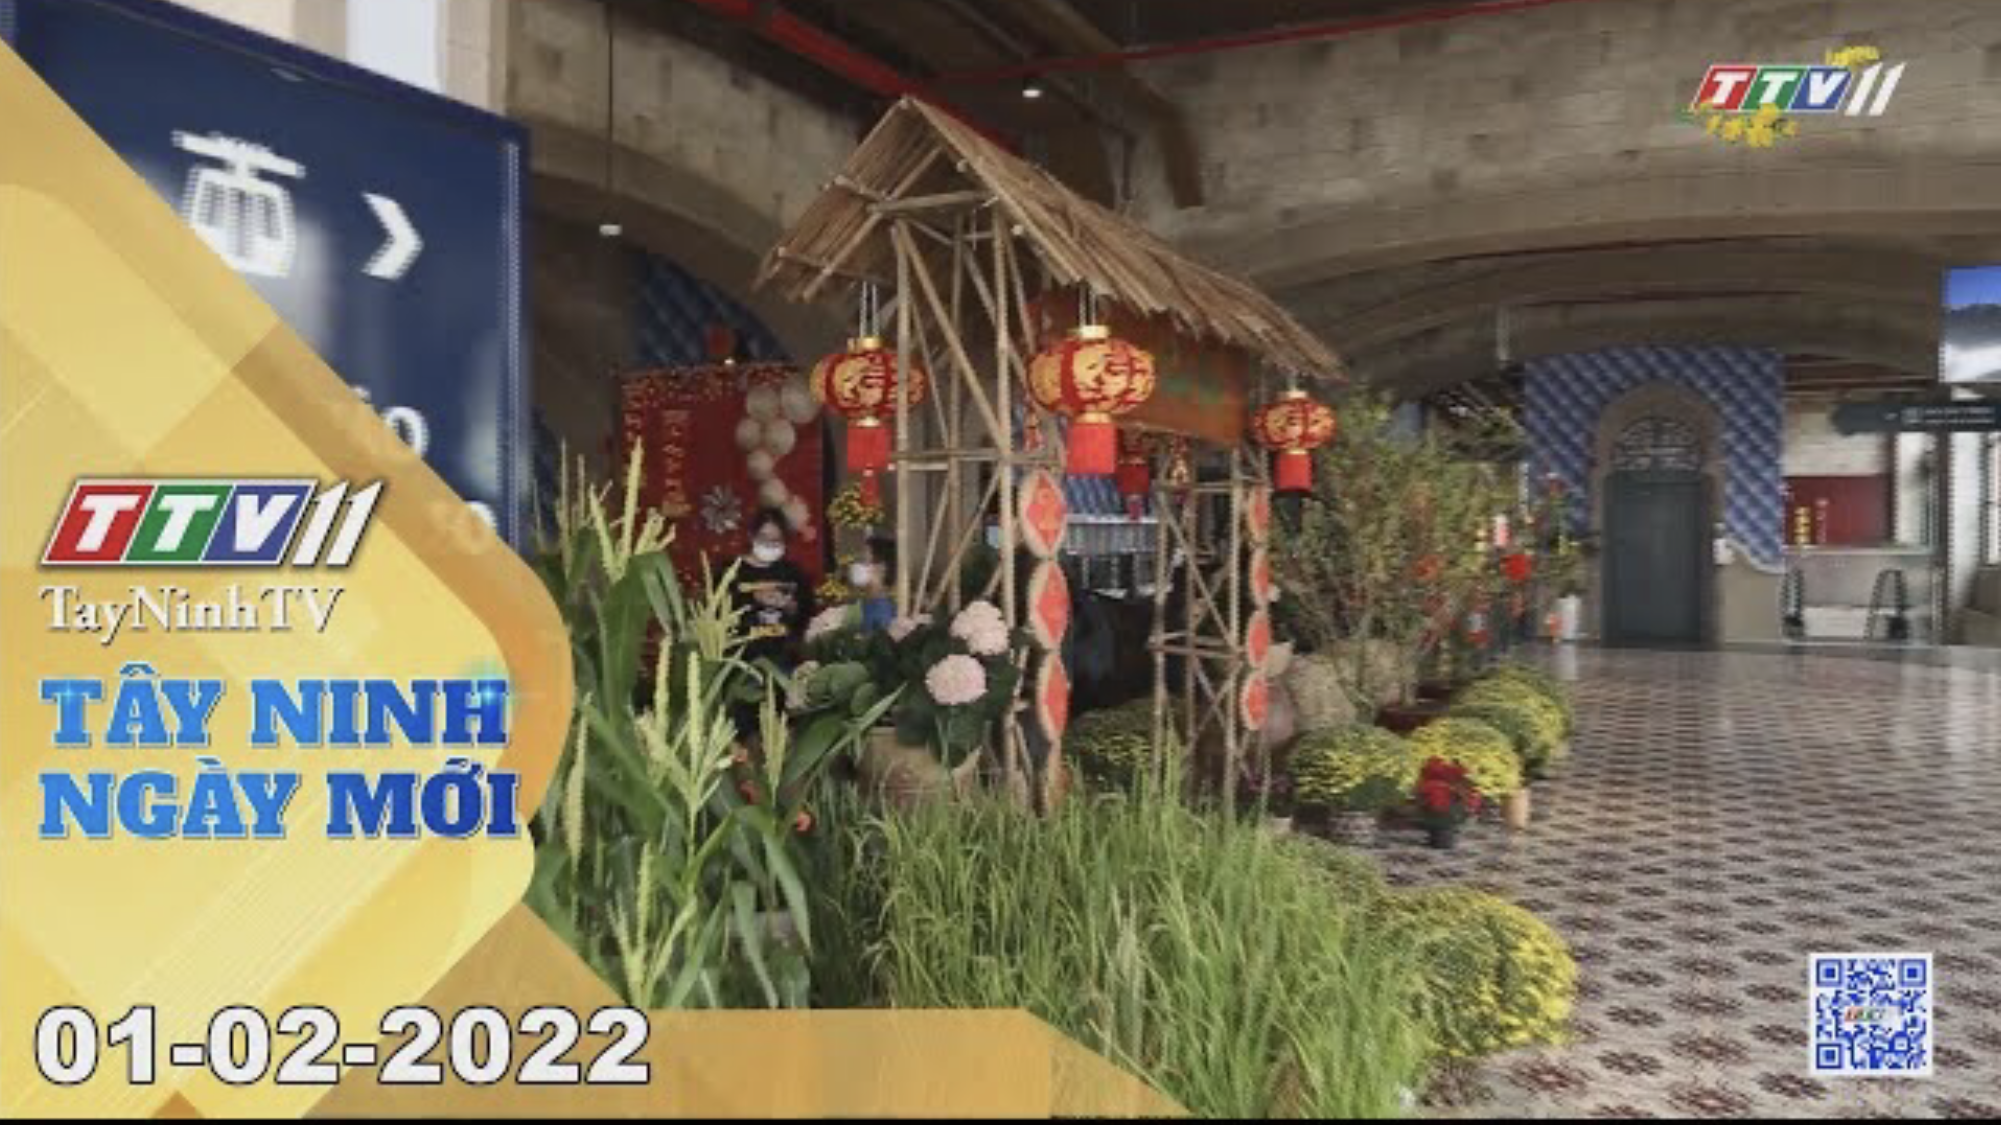 TÂY NINH NGÀY MỚI 01/02/2022 | Tin tức hôm nay | TayNinhTV